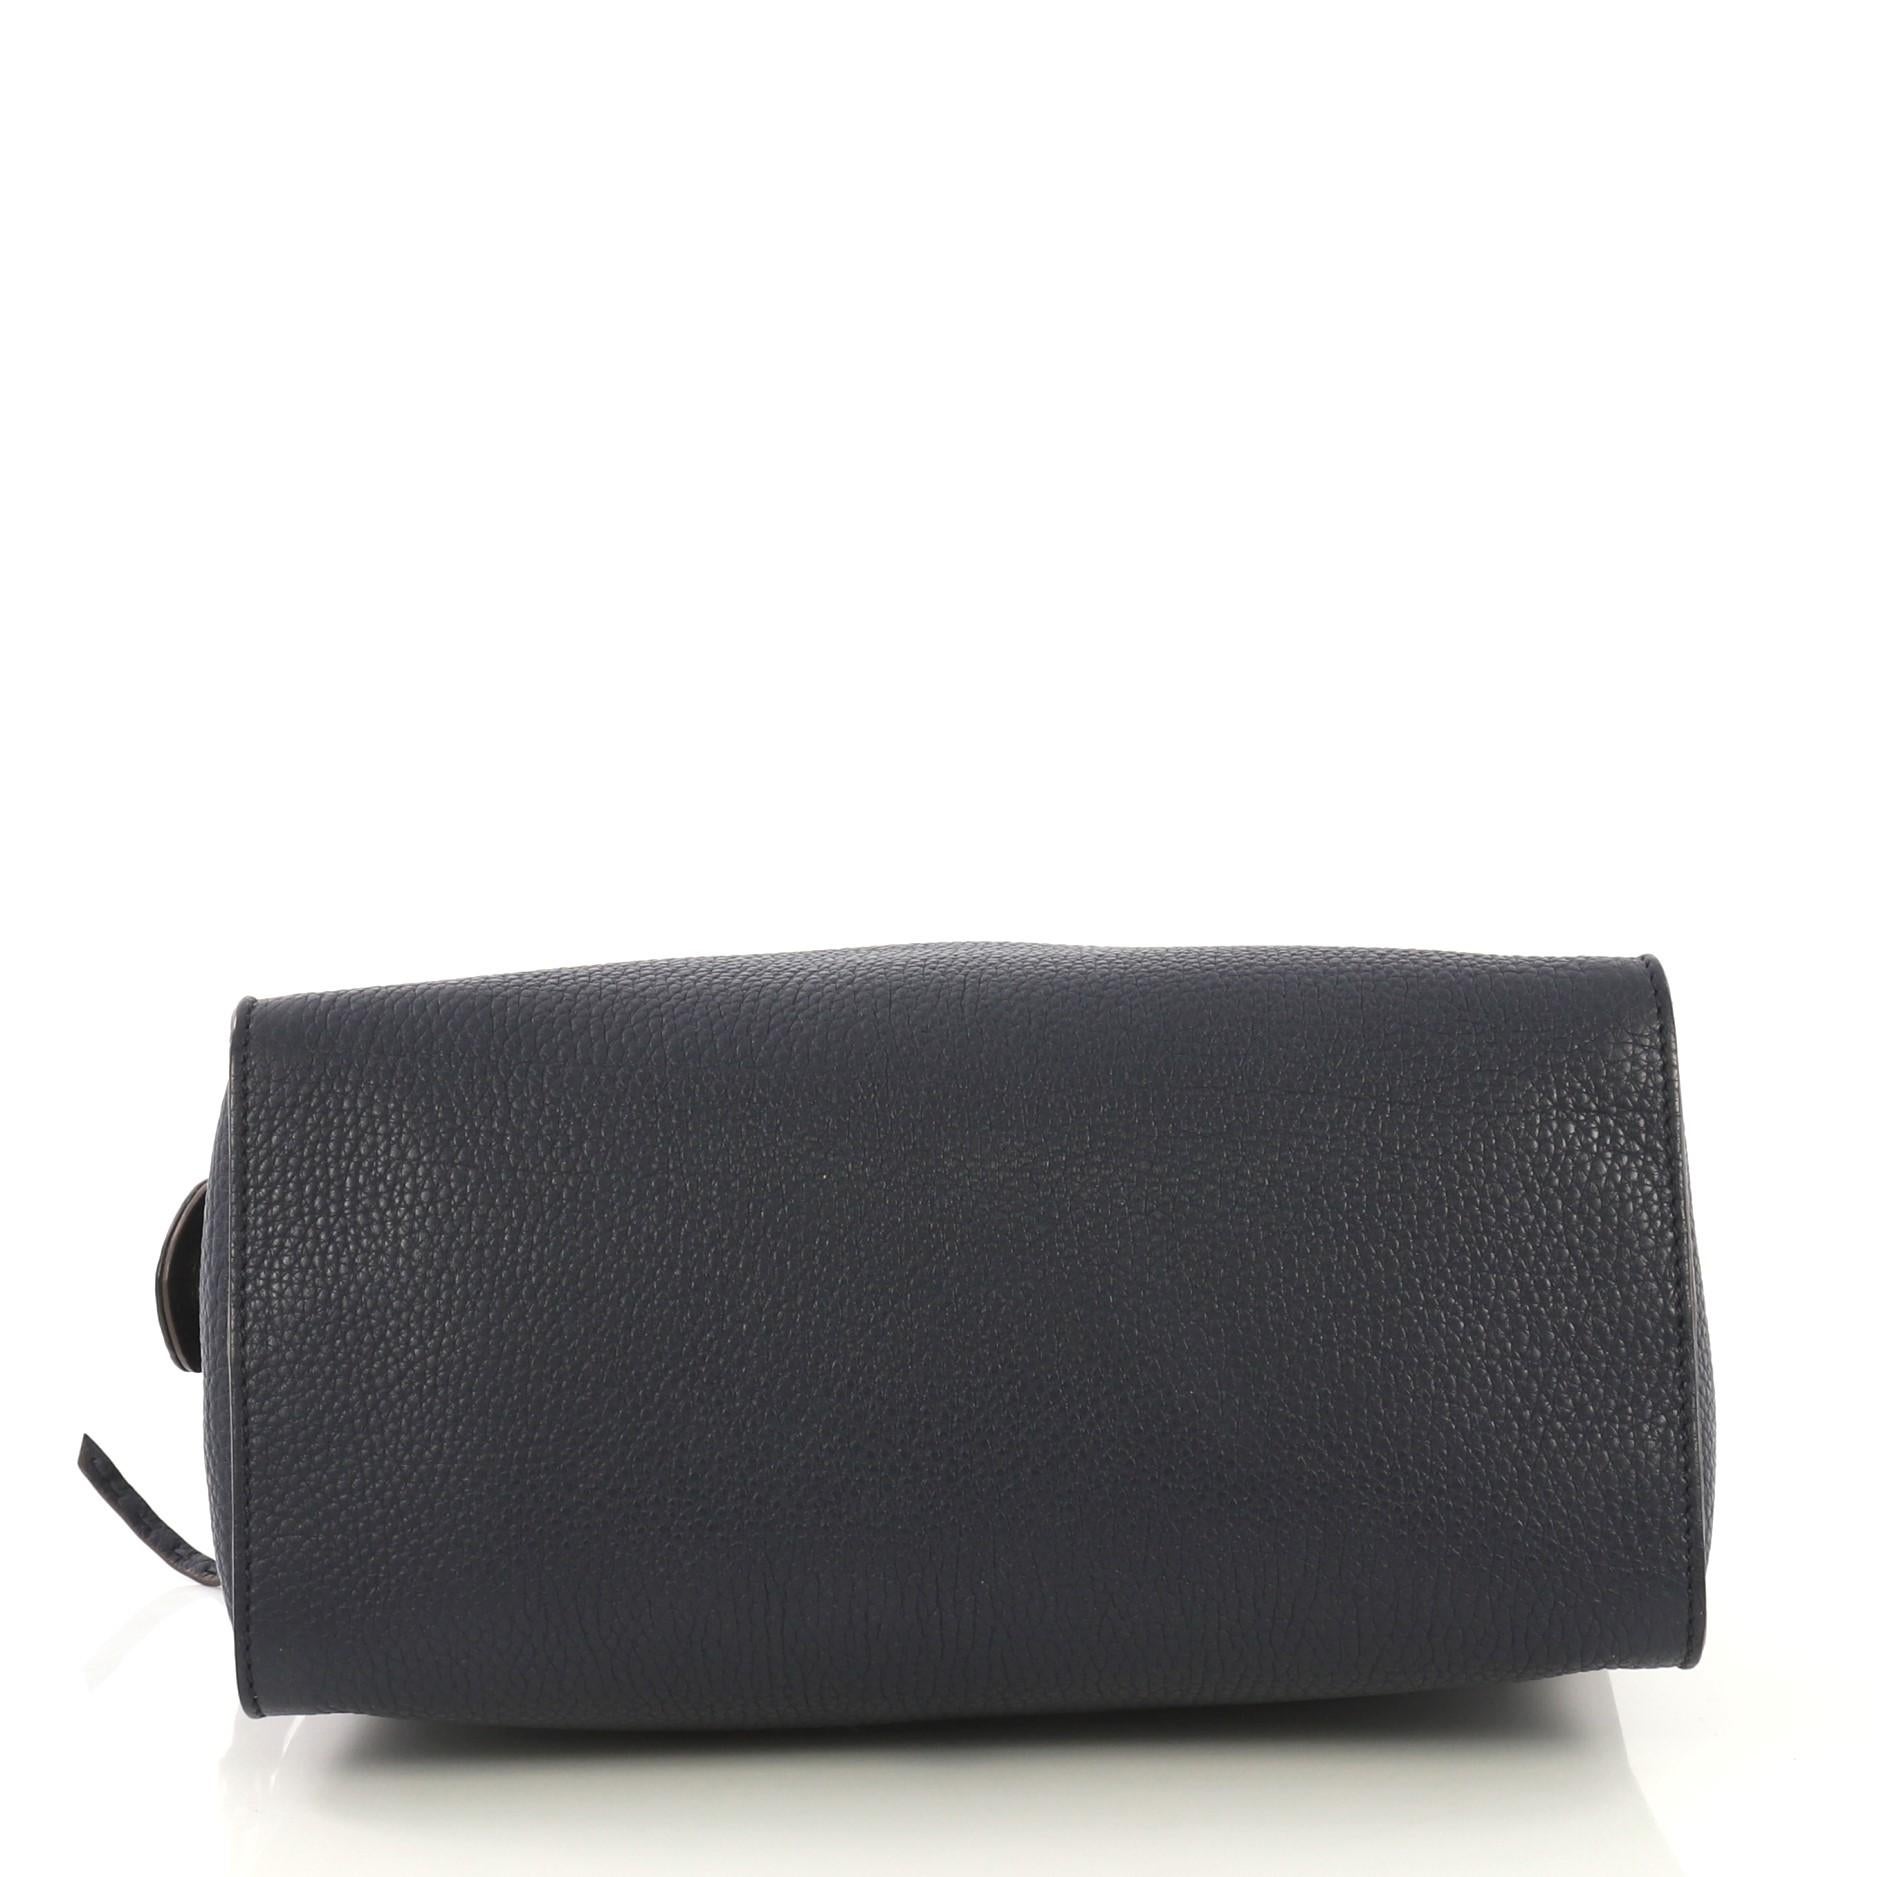 Black Fendi Selleria Lei Bag Leather